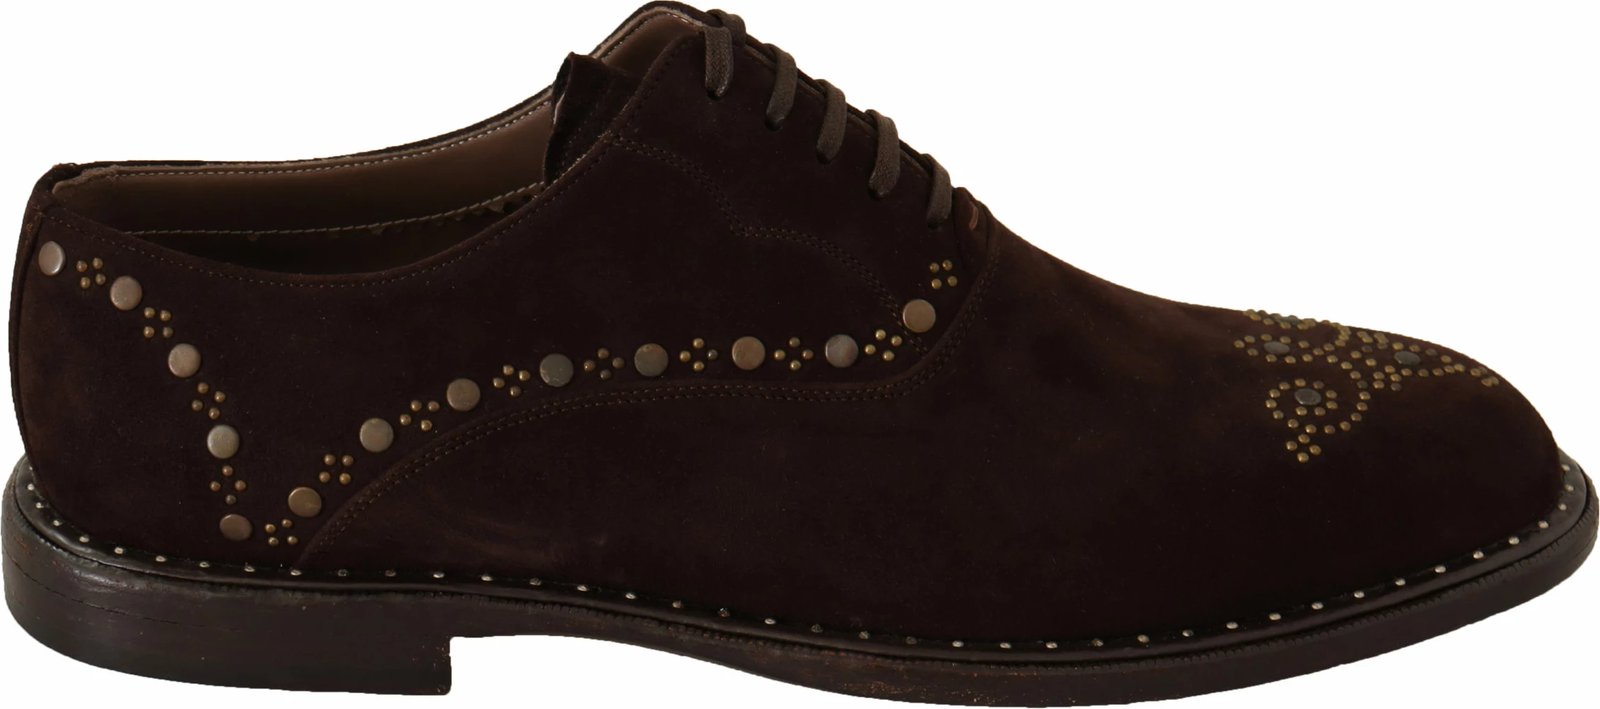 Këpucë për meshkuj Dolce & Gabbana, të kafta